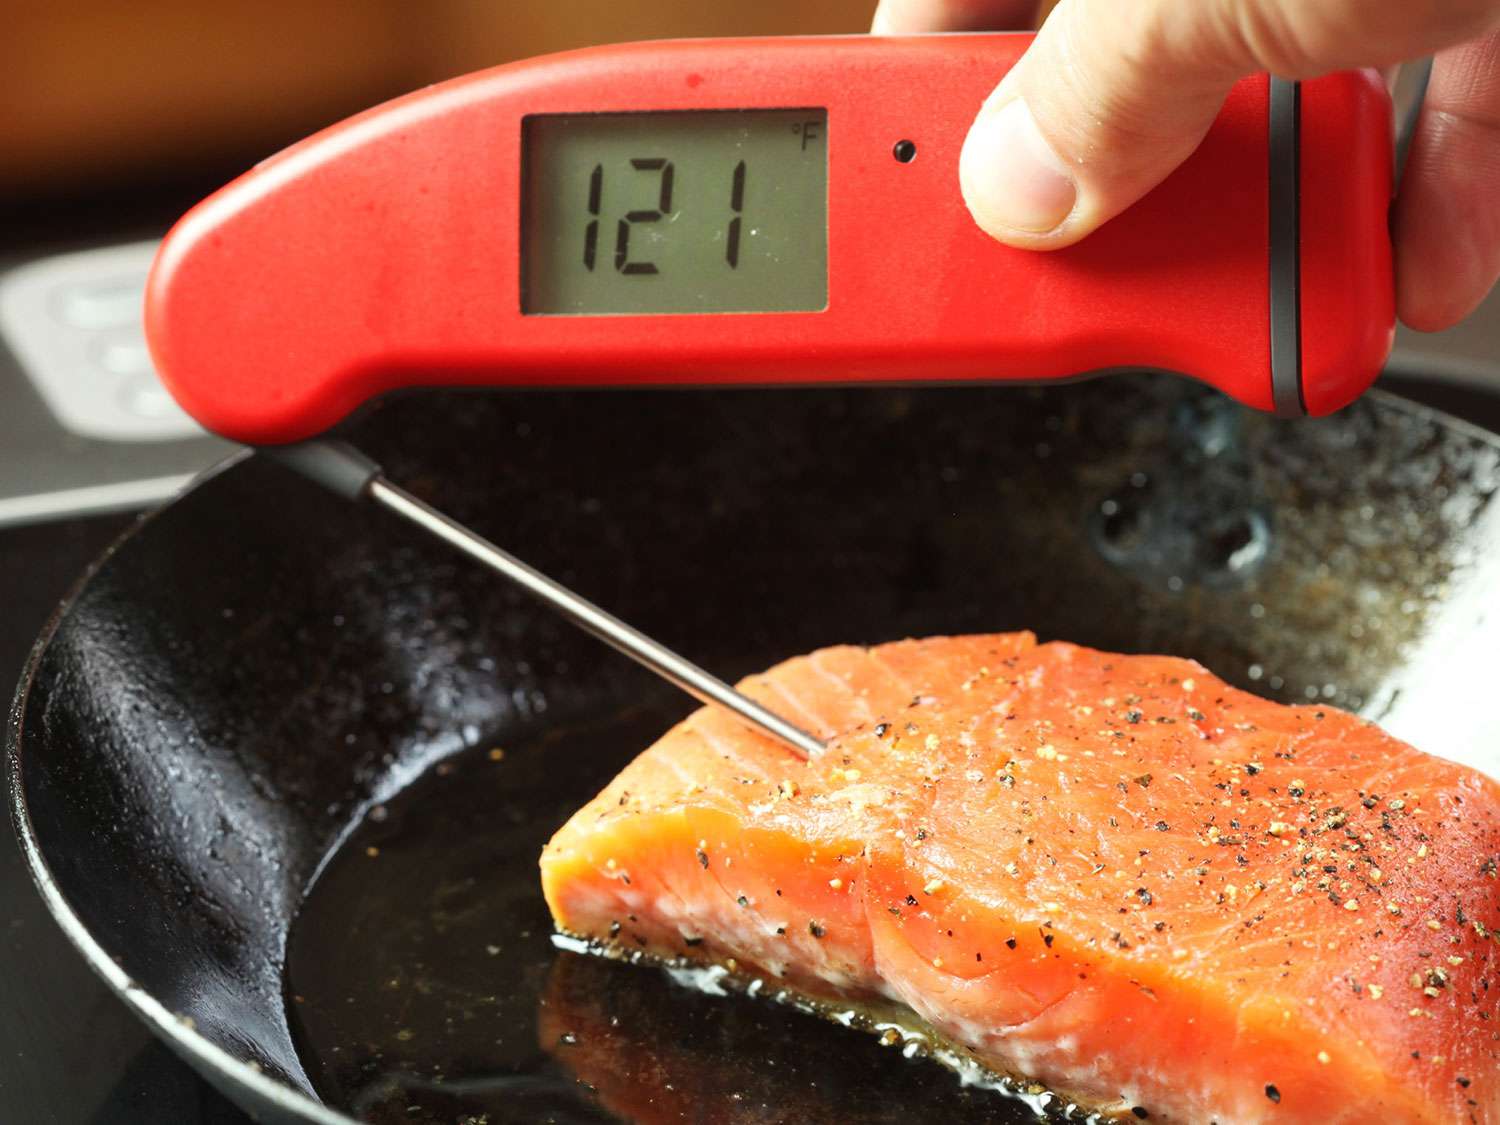 使用即时读取温度计来查看烤鲑鱼片内部的温度是121F。